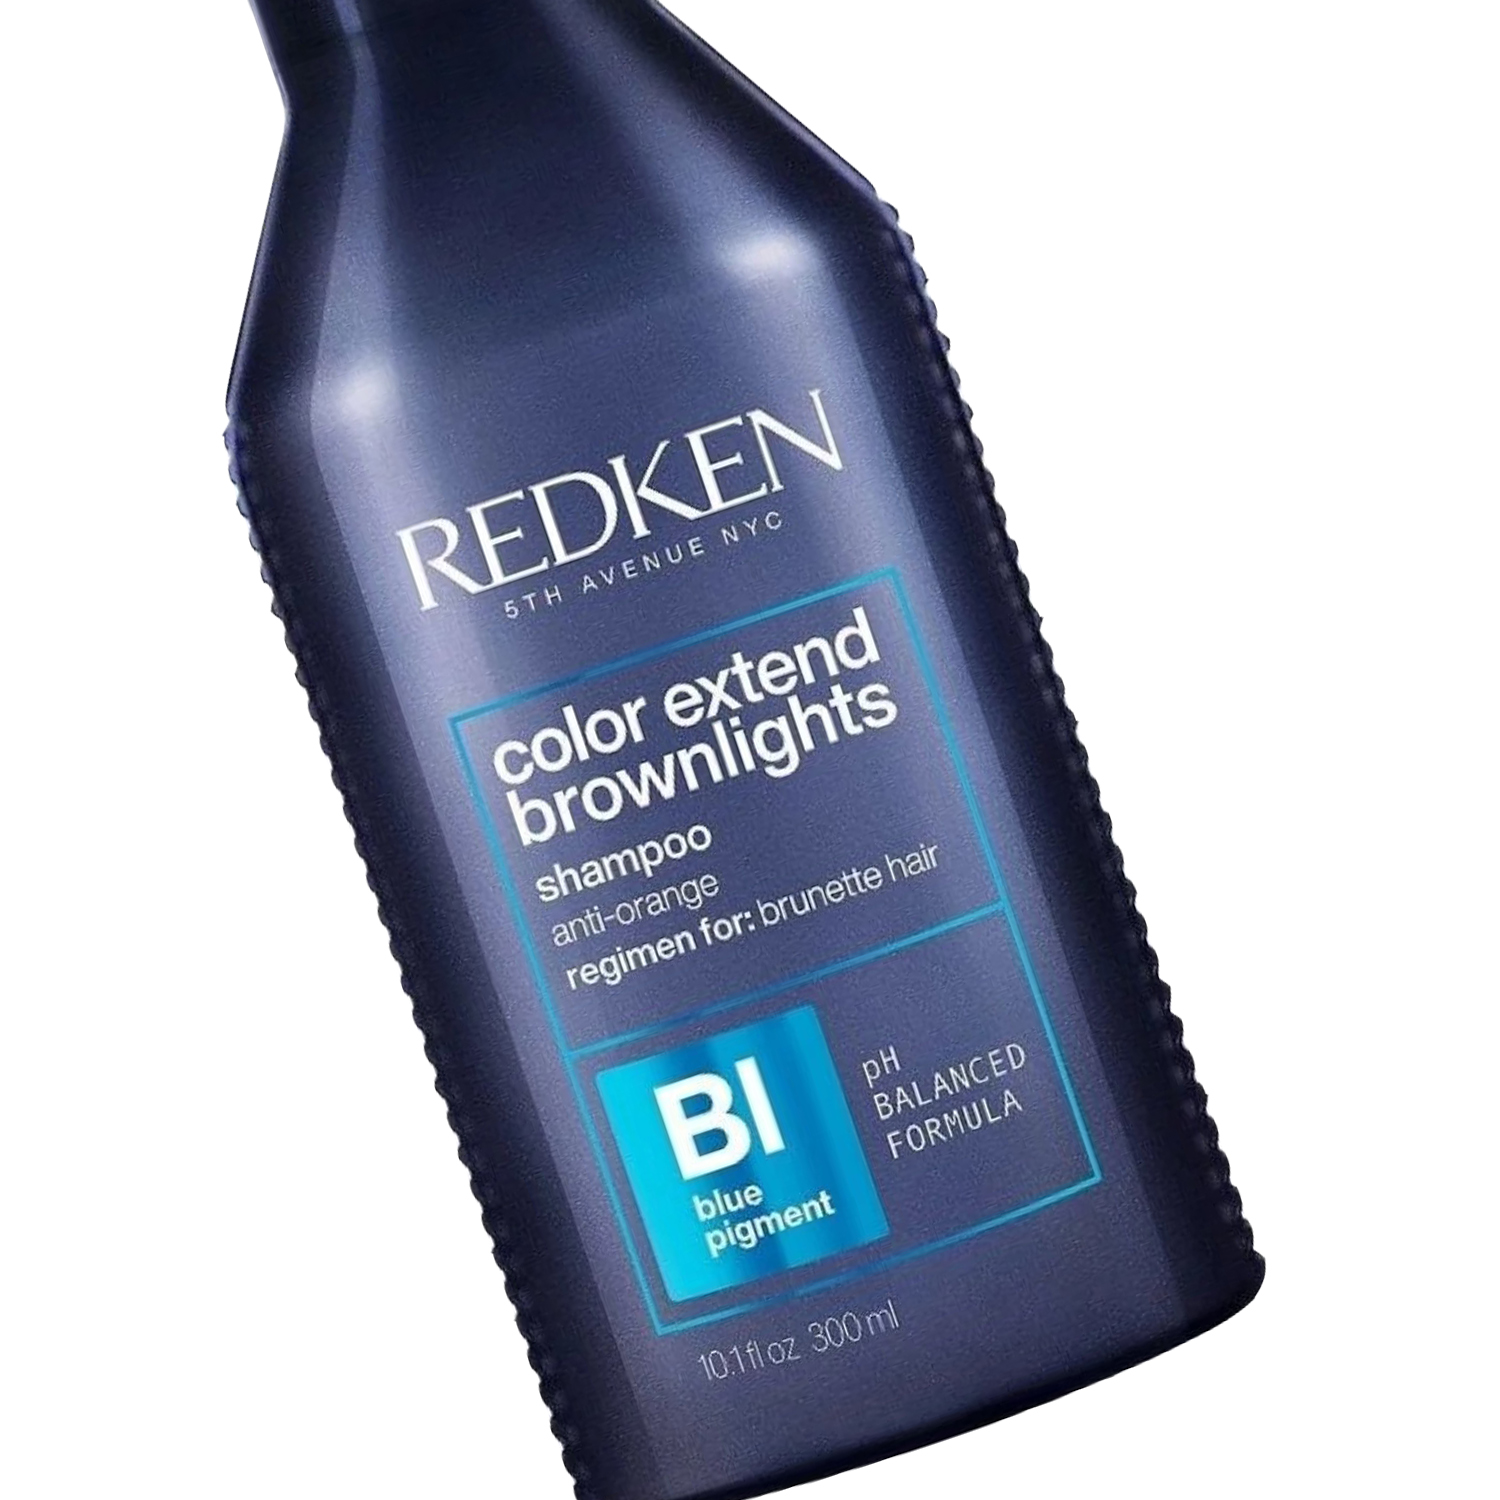 Redken Color Extend Brownlights Shampoo for Brunette Hair 10.1 oz - image 5 of 5